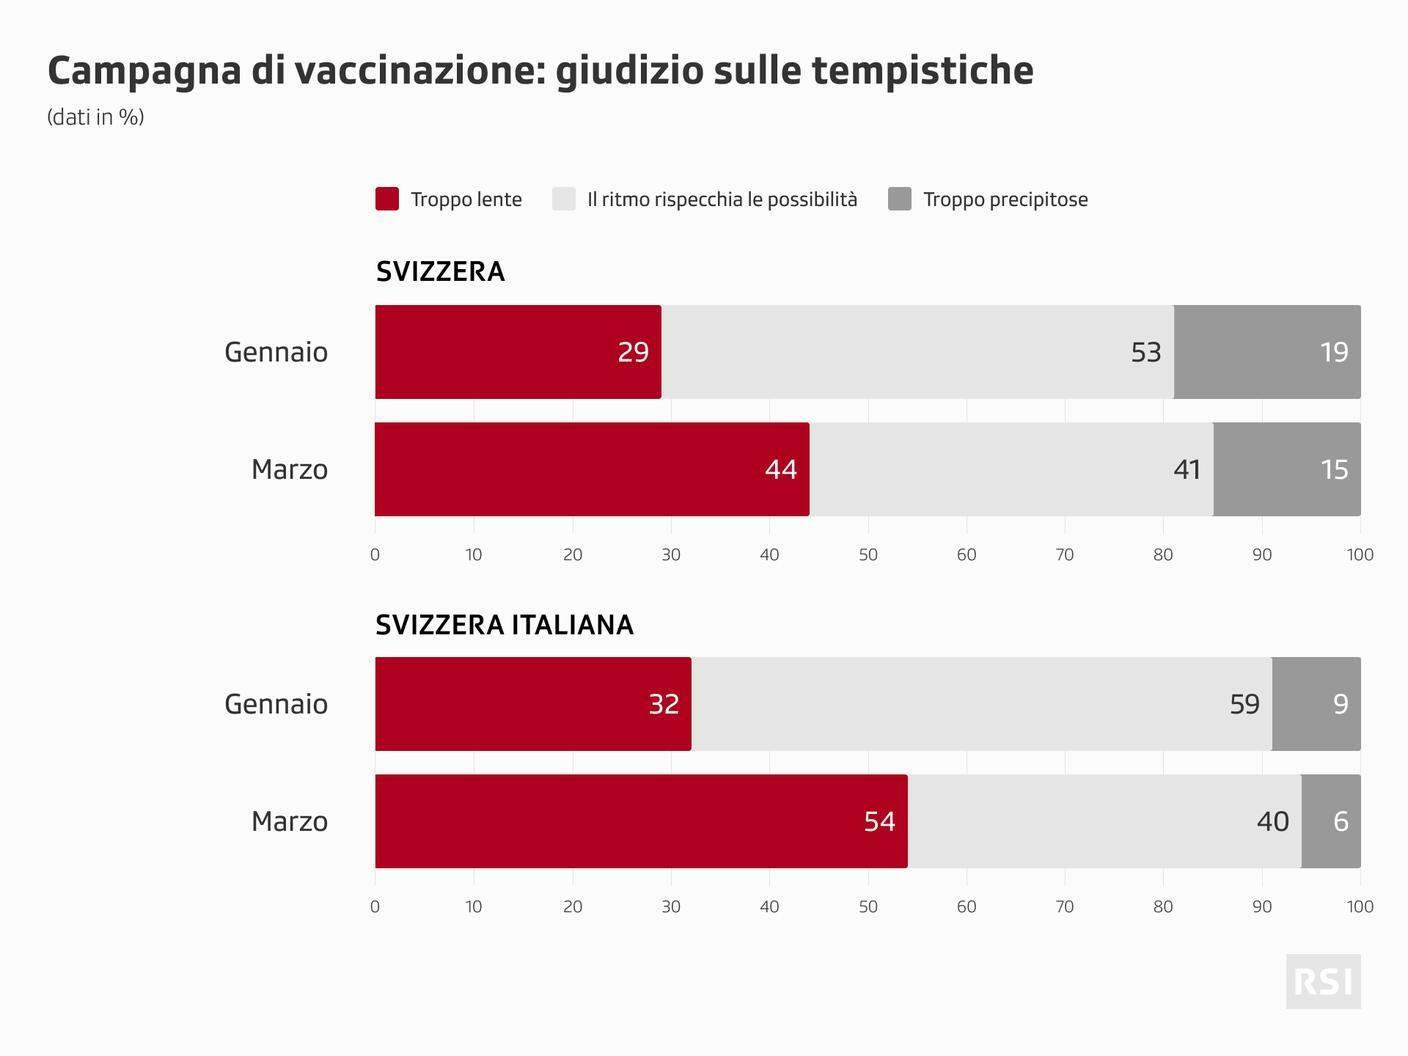 L'evoluzione dei pareri, negli ultimi mesi, sui ritmi della campagna di vaccinazione